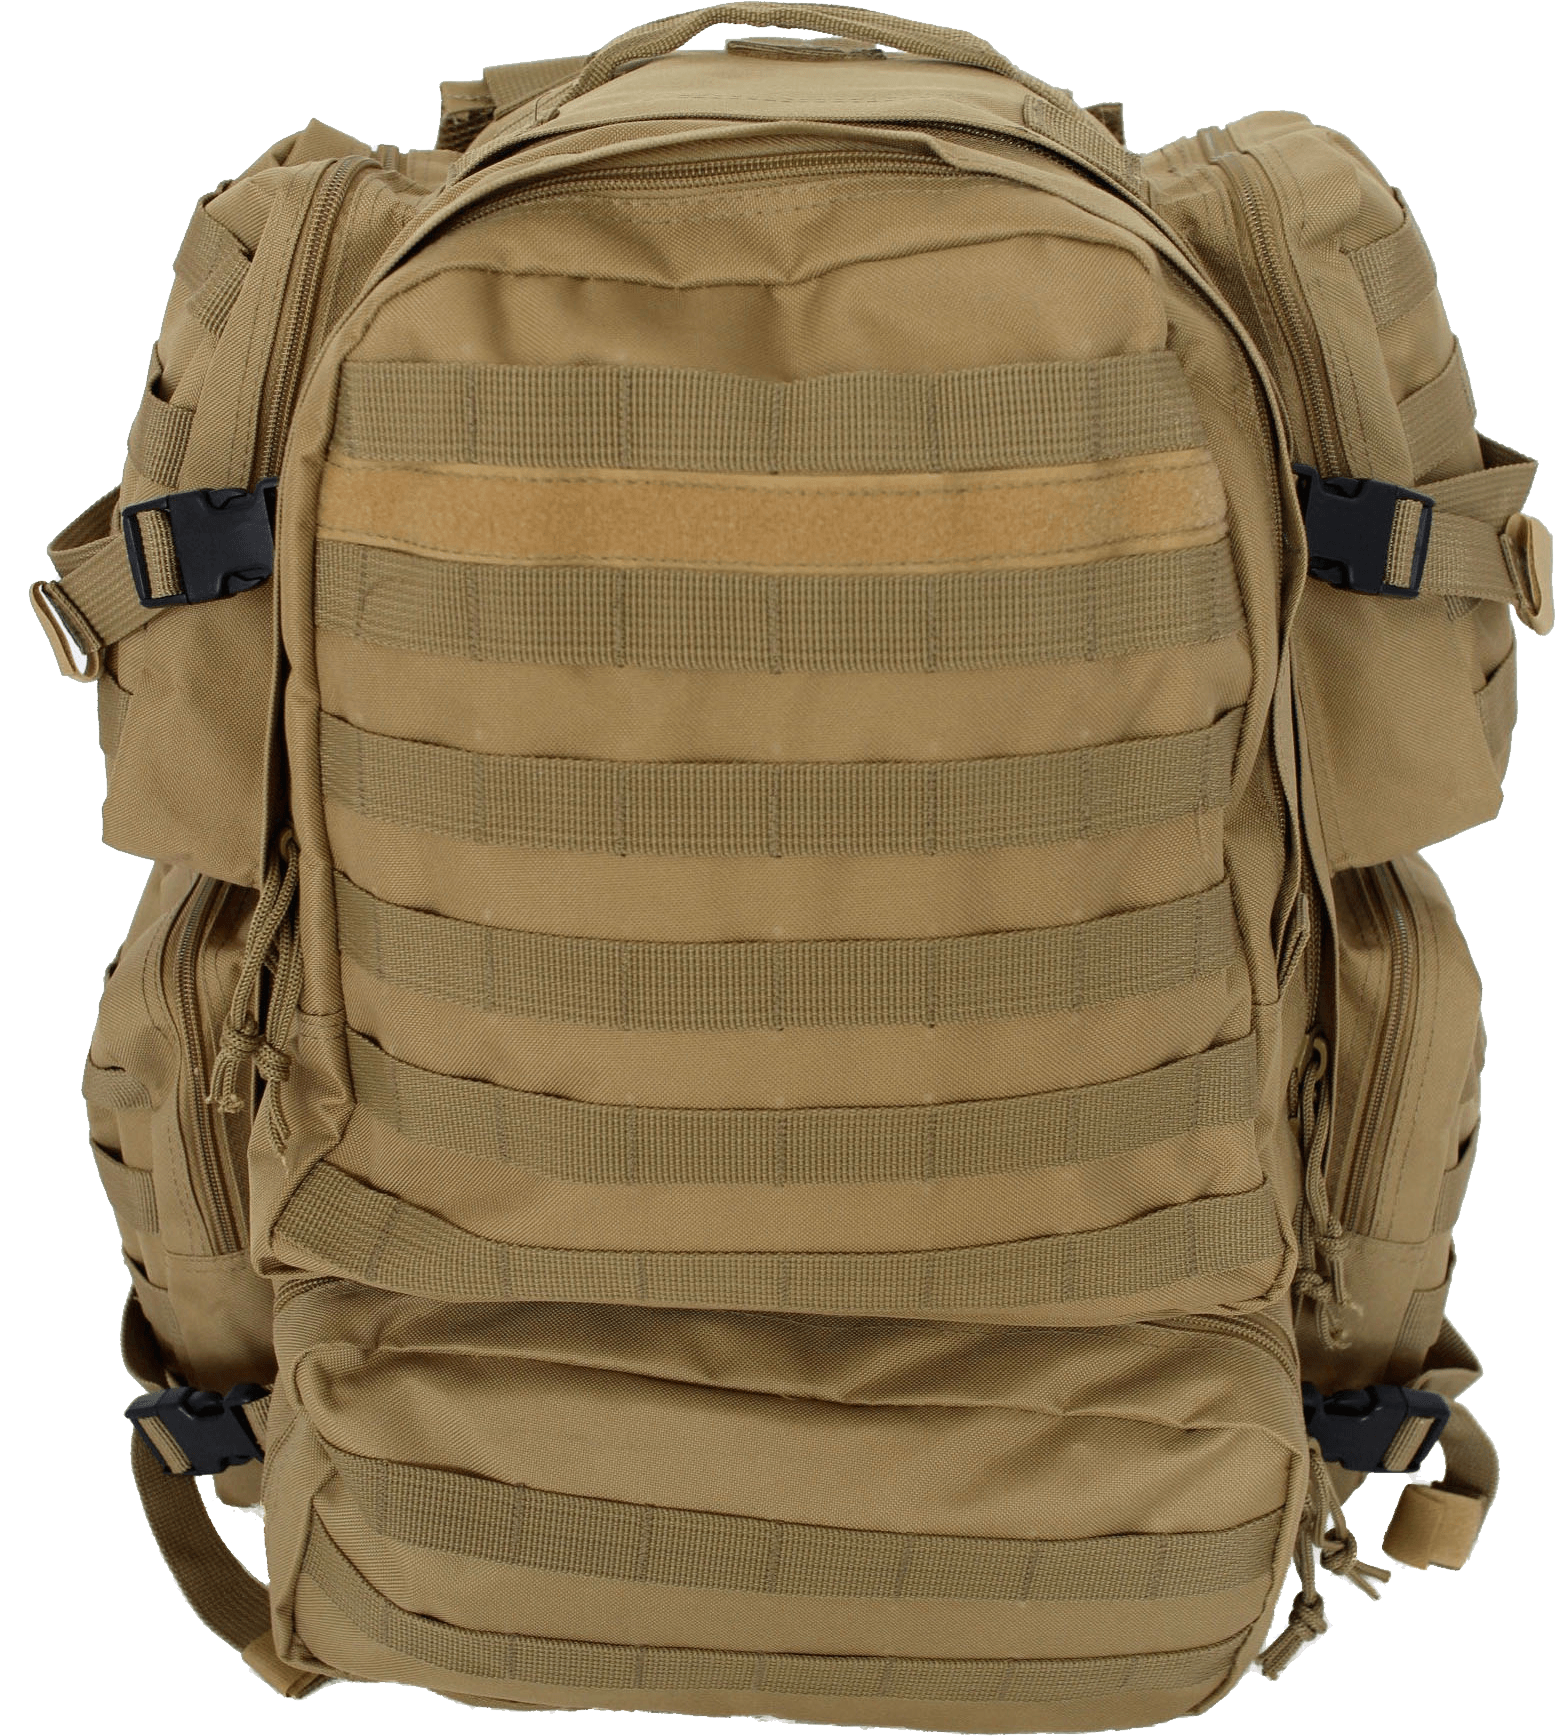 Shorts Knapsack Suitcase Saddlebag Military PNG